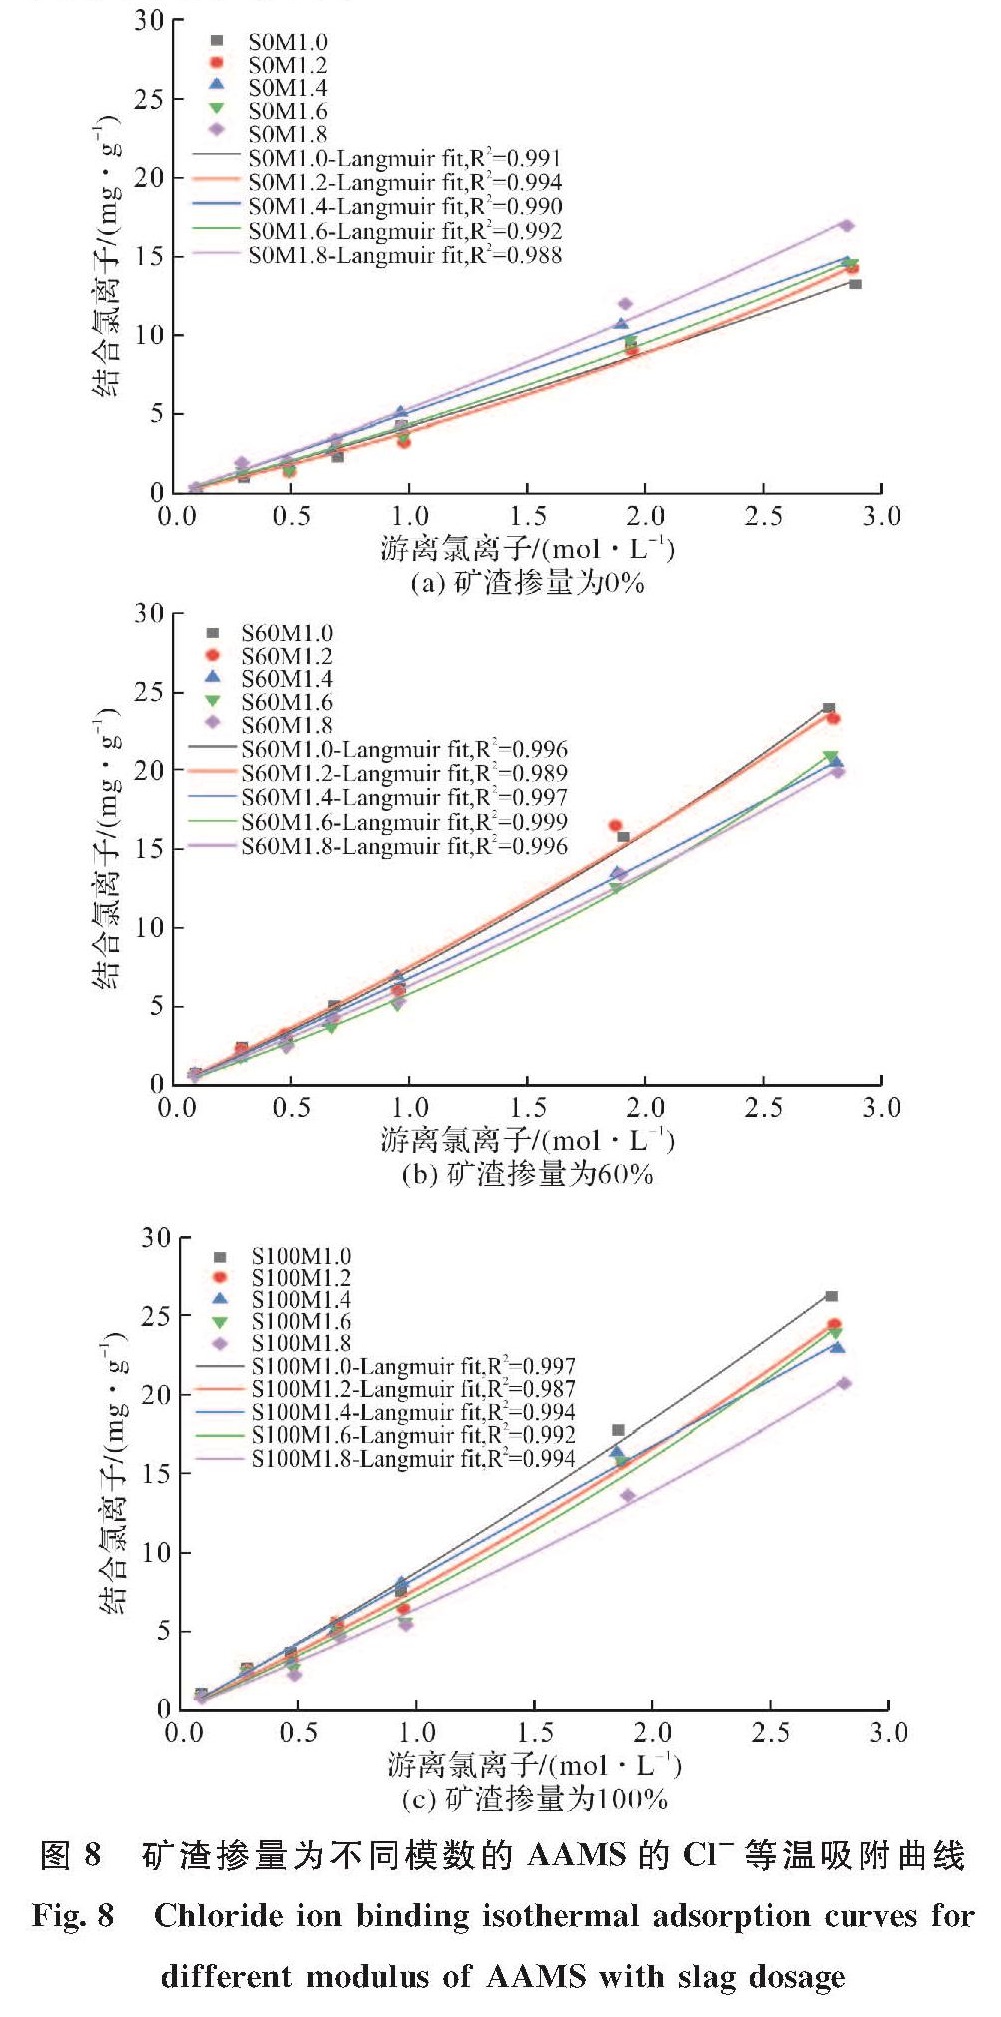 图8 矿渣掺量为不同模数的AAMS的Cl-等温吸附曲线<br/>Fig.8 Chloride ion binding isothermal adsorption curves for different modulus of AAMS with slag dosage